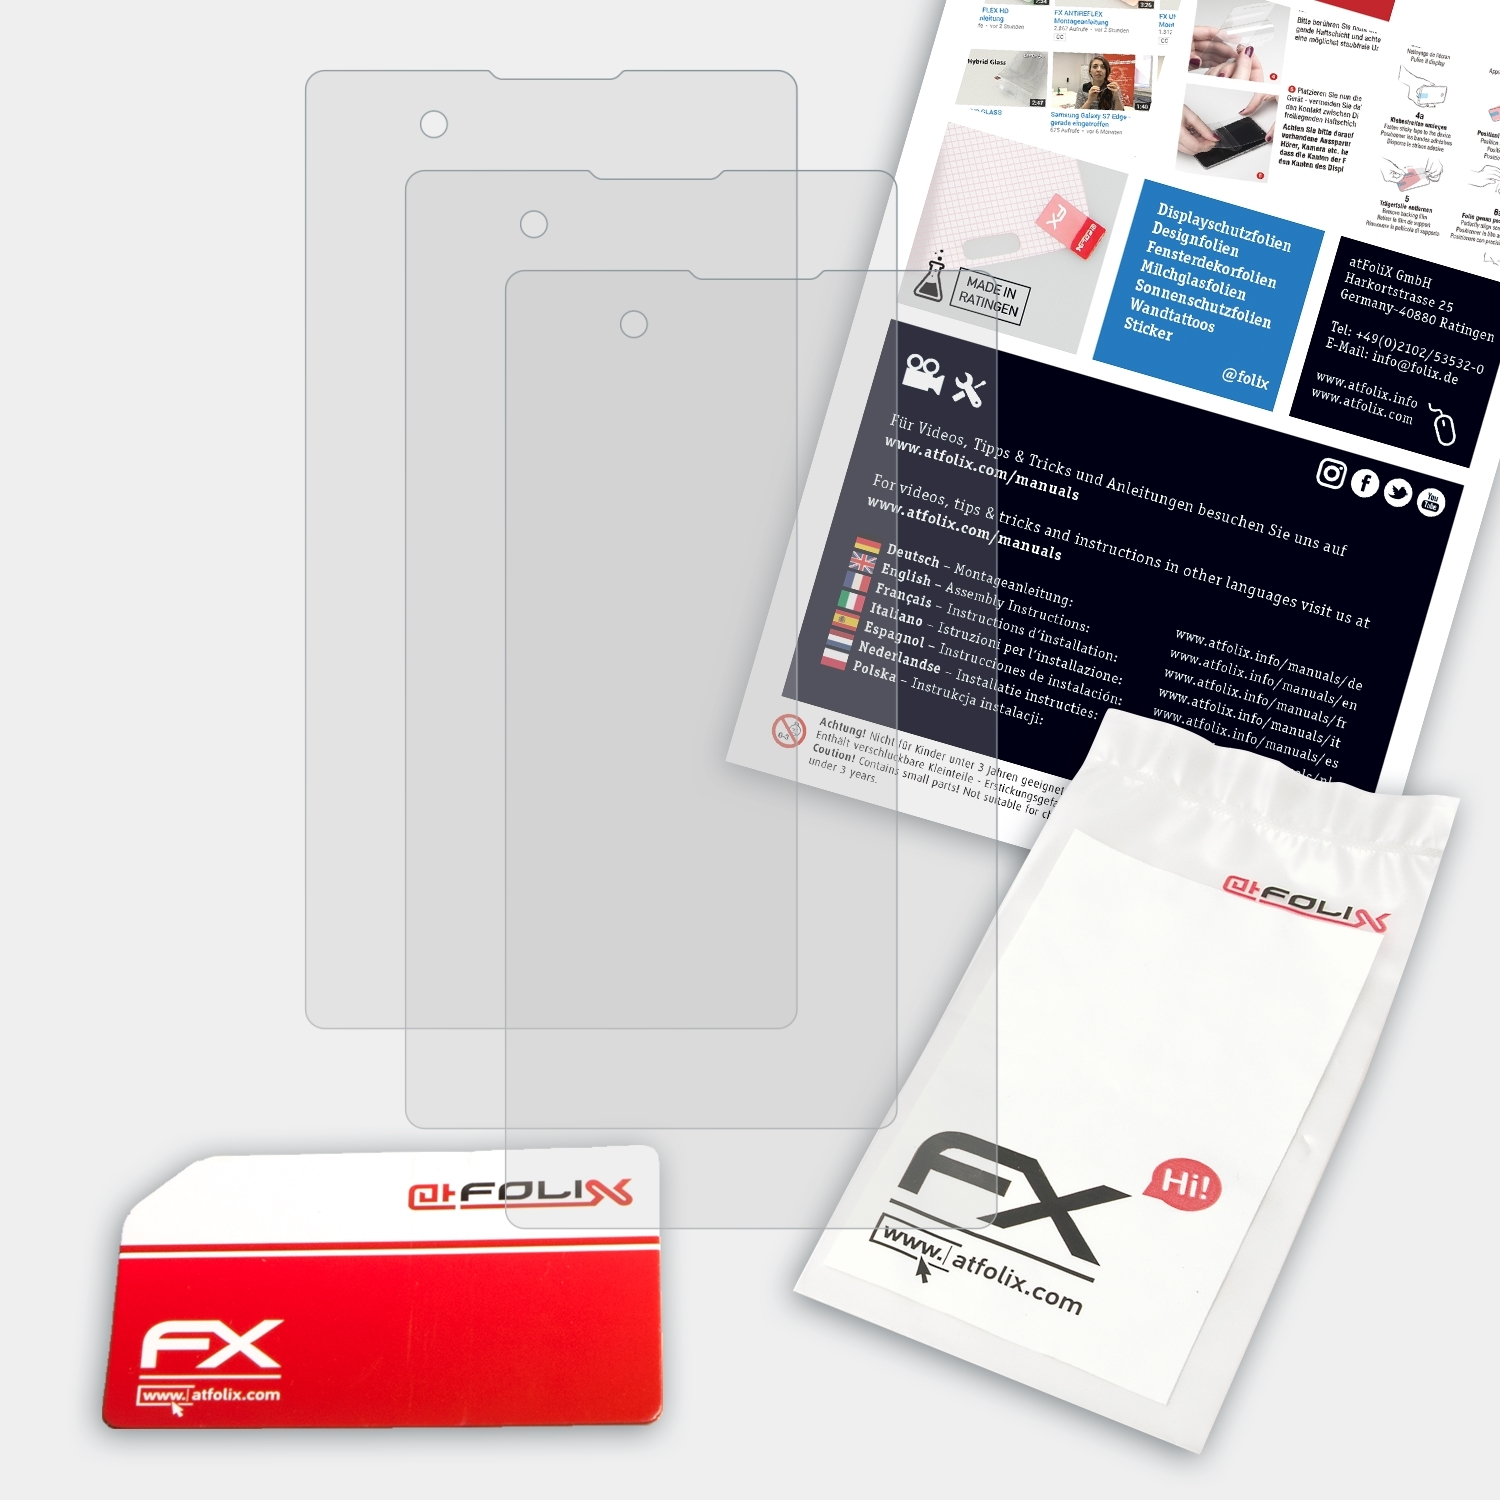 (P940)) ATFOLIX FX-Antireflex Displayschutz(für Prada Phone 3.0 3x LG